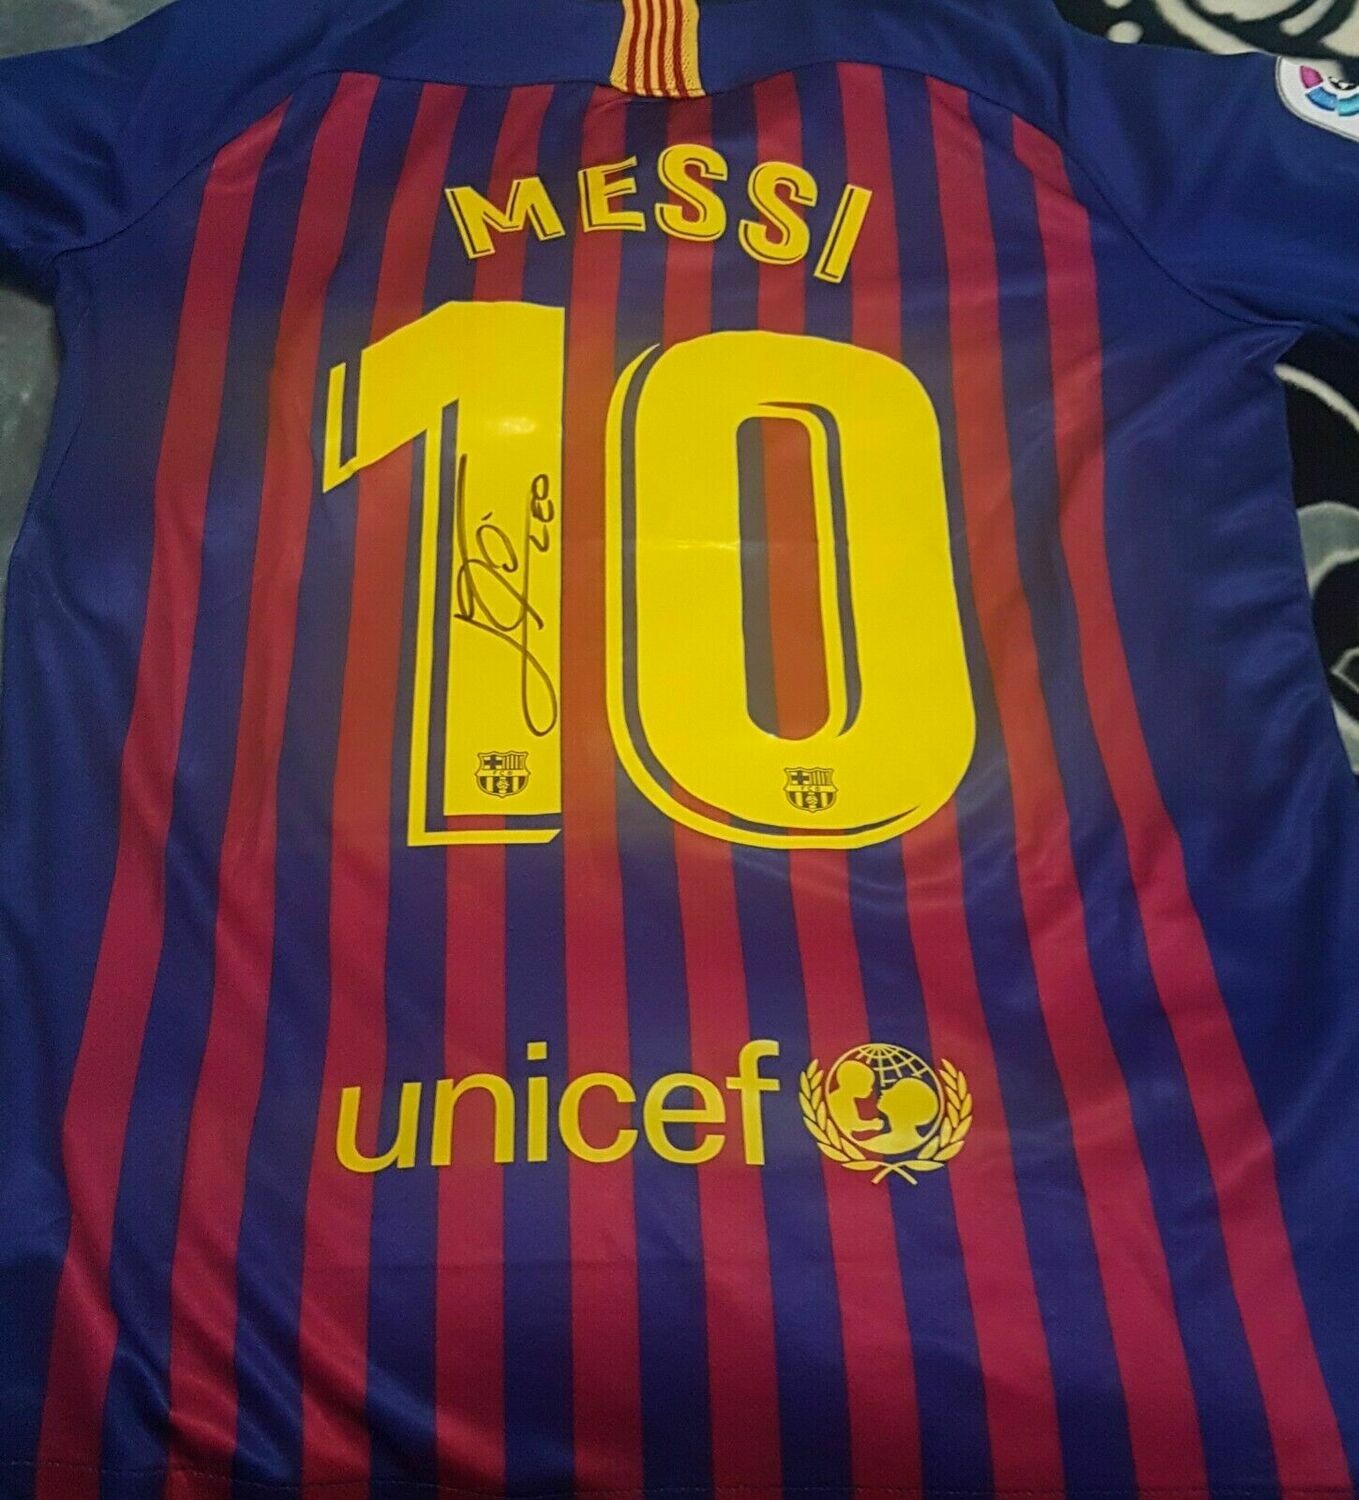 Maglia Barcelona Maglia Casa 2018 2019  Lionel Messi Autografata Signed wich COA certificate Barcelona Jersey Home 2018 2019 Lionel Messi Signed with coa